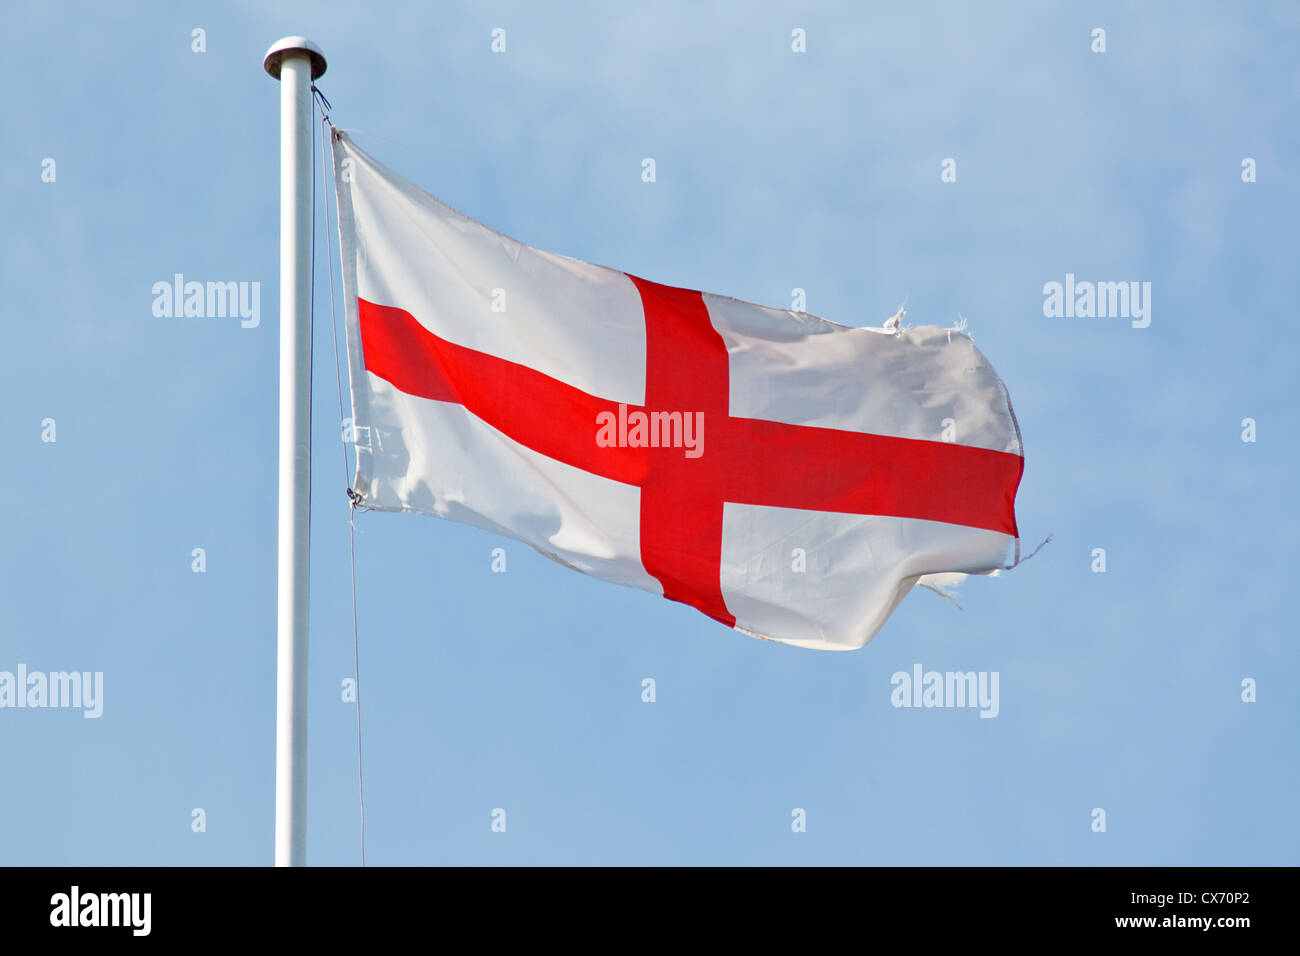 Drapeau blanc et rouge pays Angleterre pour fêter événement.